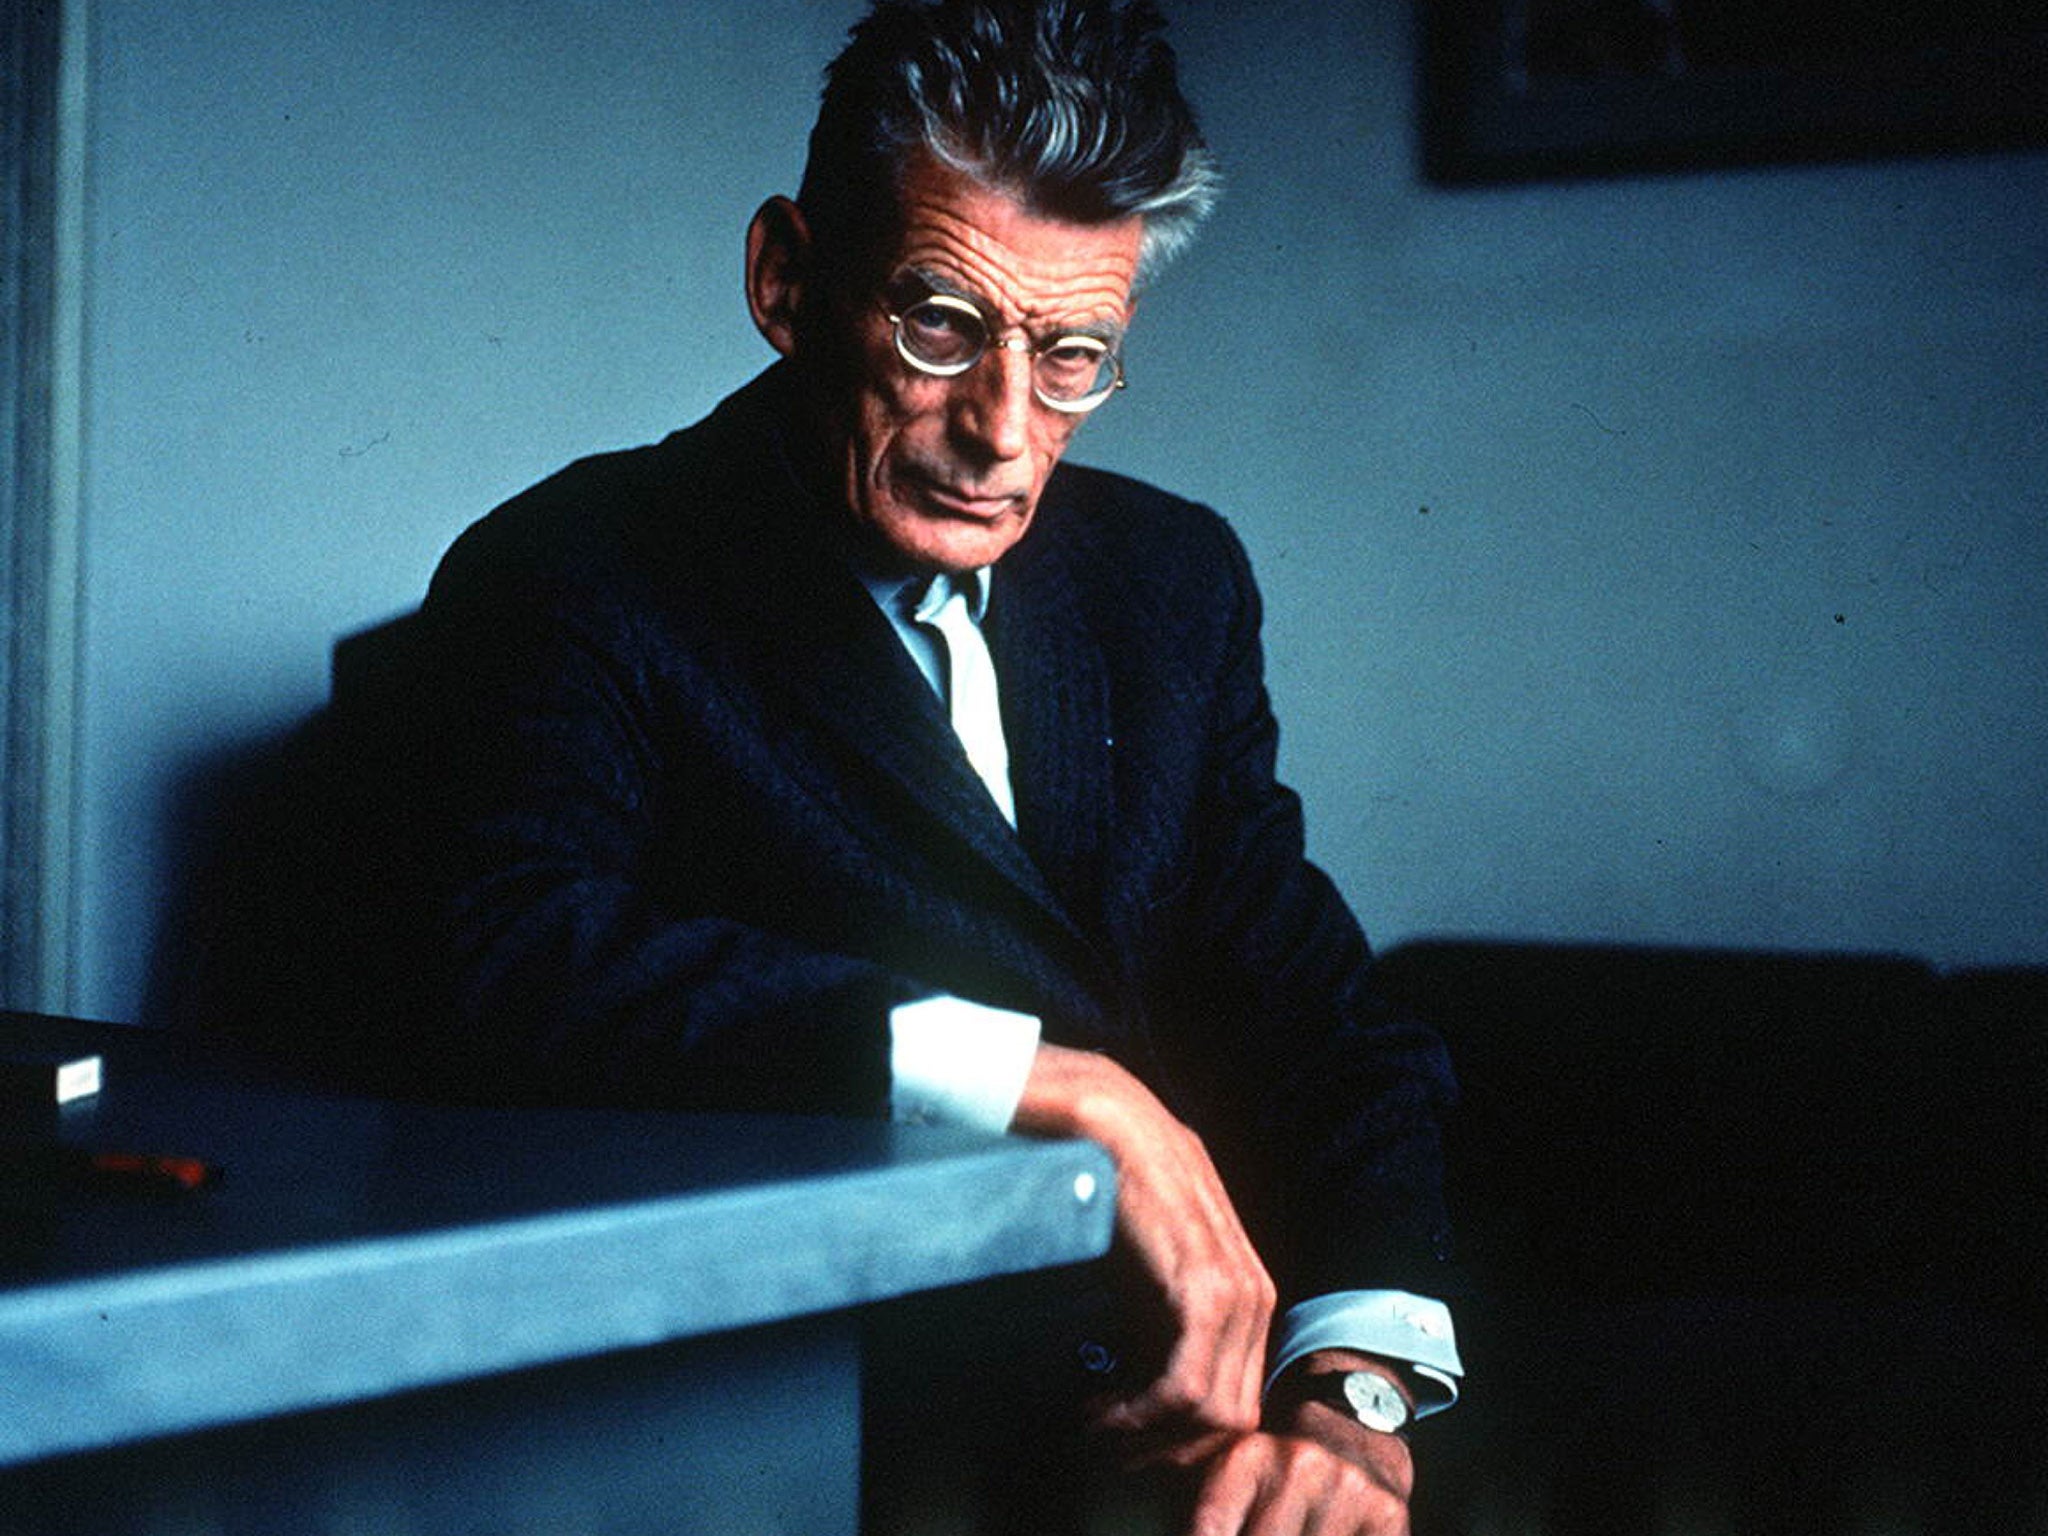 Samuel Beckett, playwright